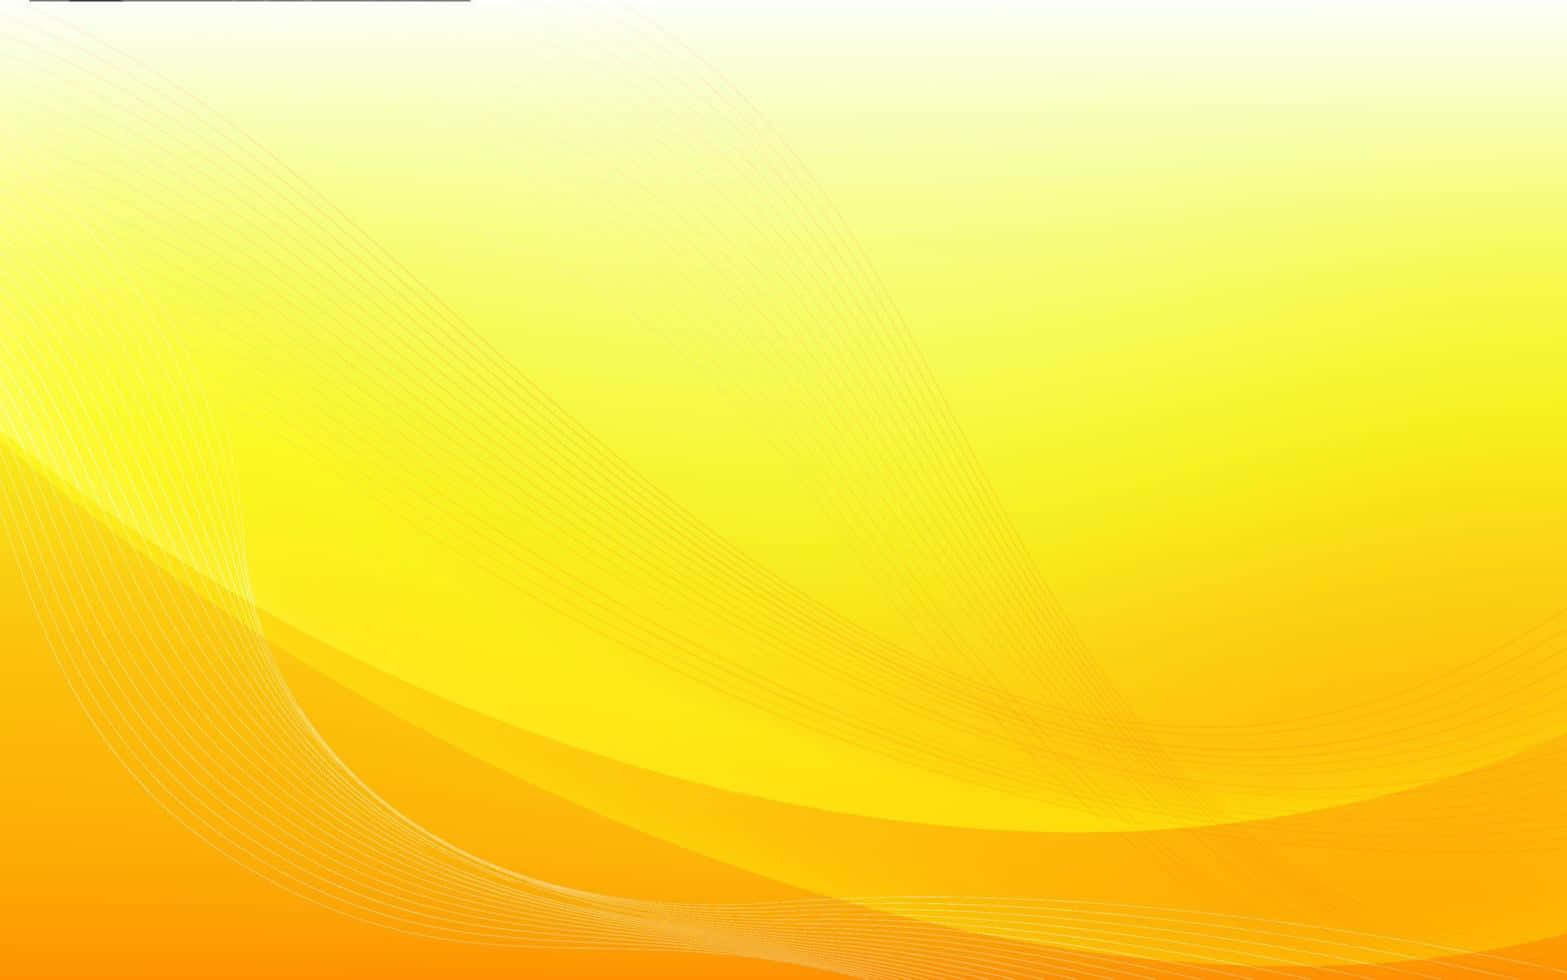 Einabstrakter Gelber Hintergrund Mit Einer Wellenmuster